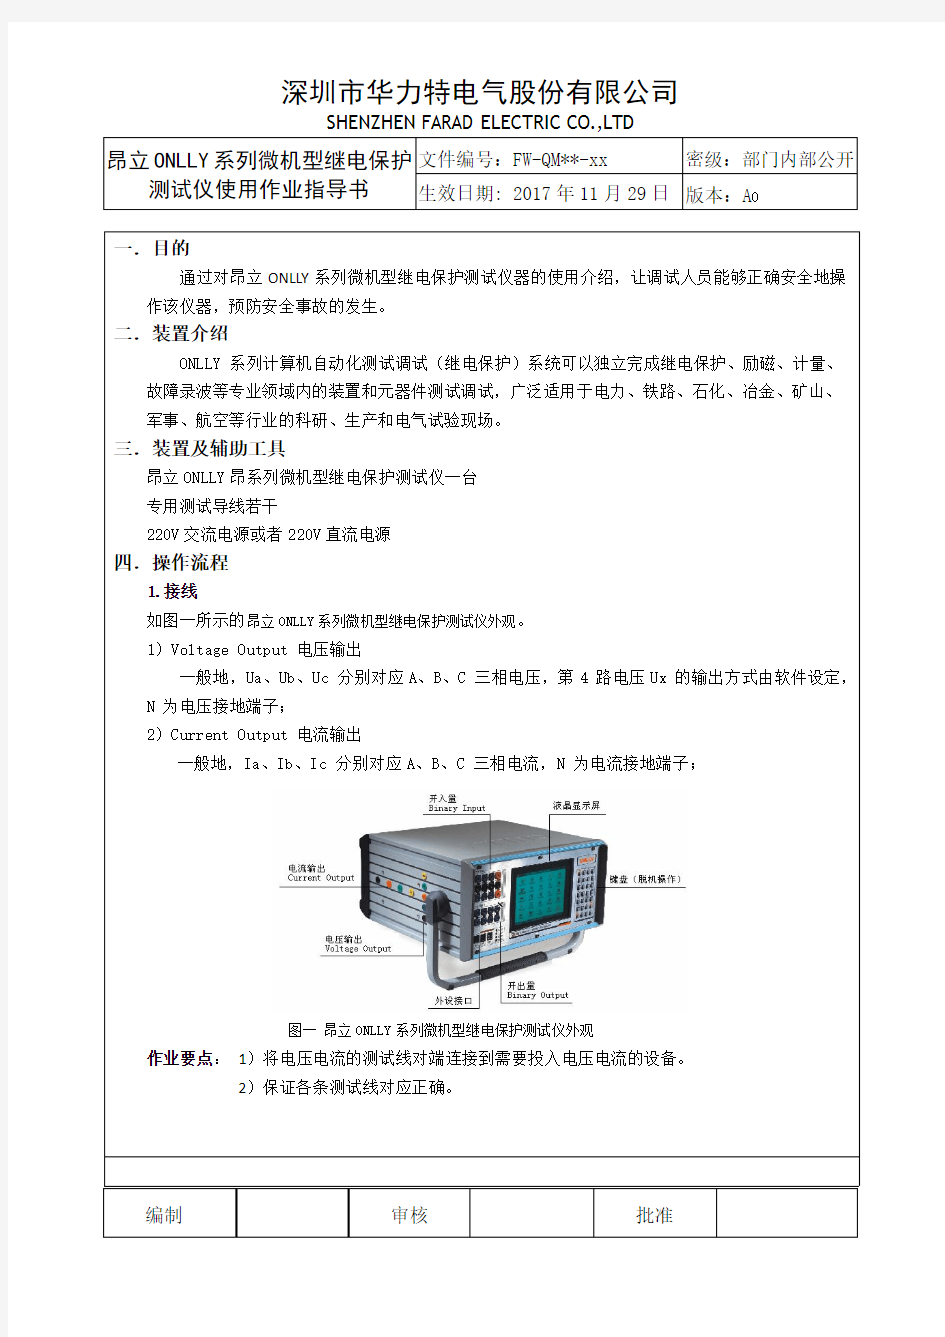 昂立ONLLY系列微机型继电保护测试仪作业指导书